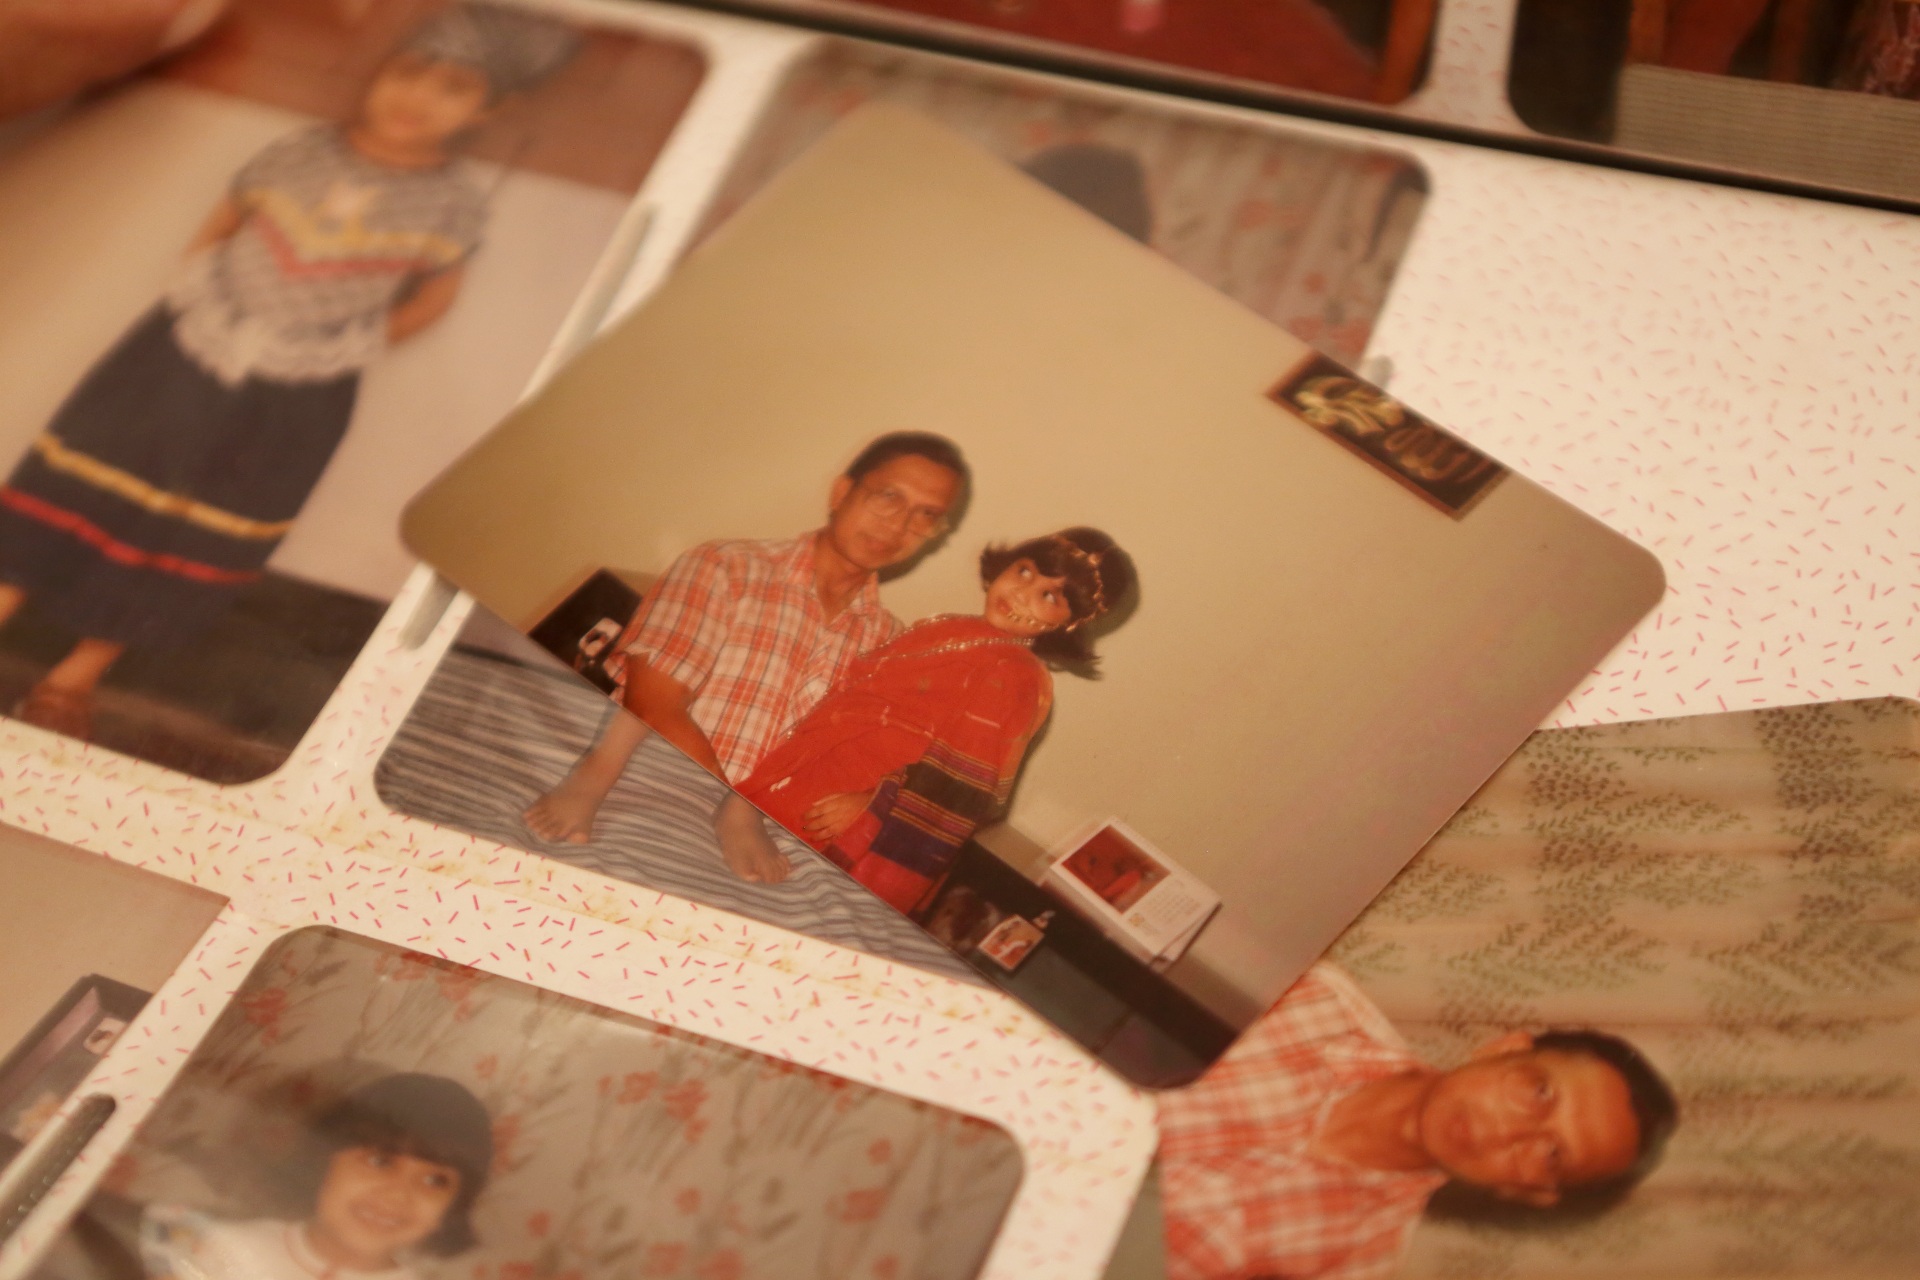 Fotografías de Shagufta y su padre en el álbum familiar.